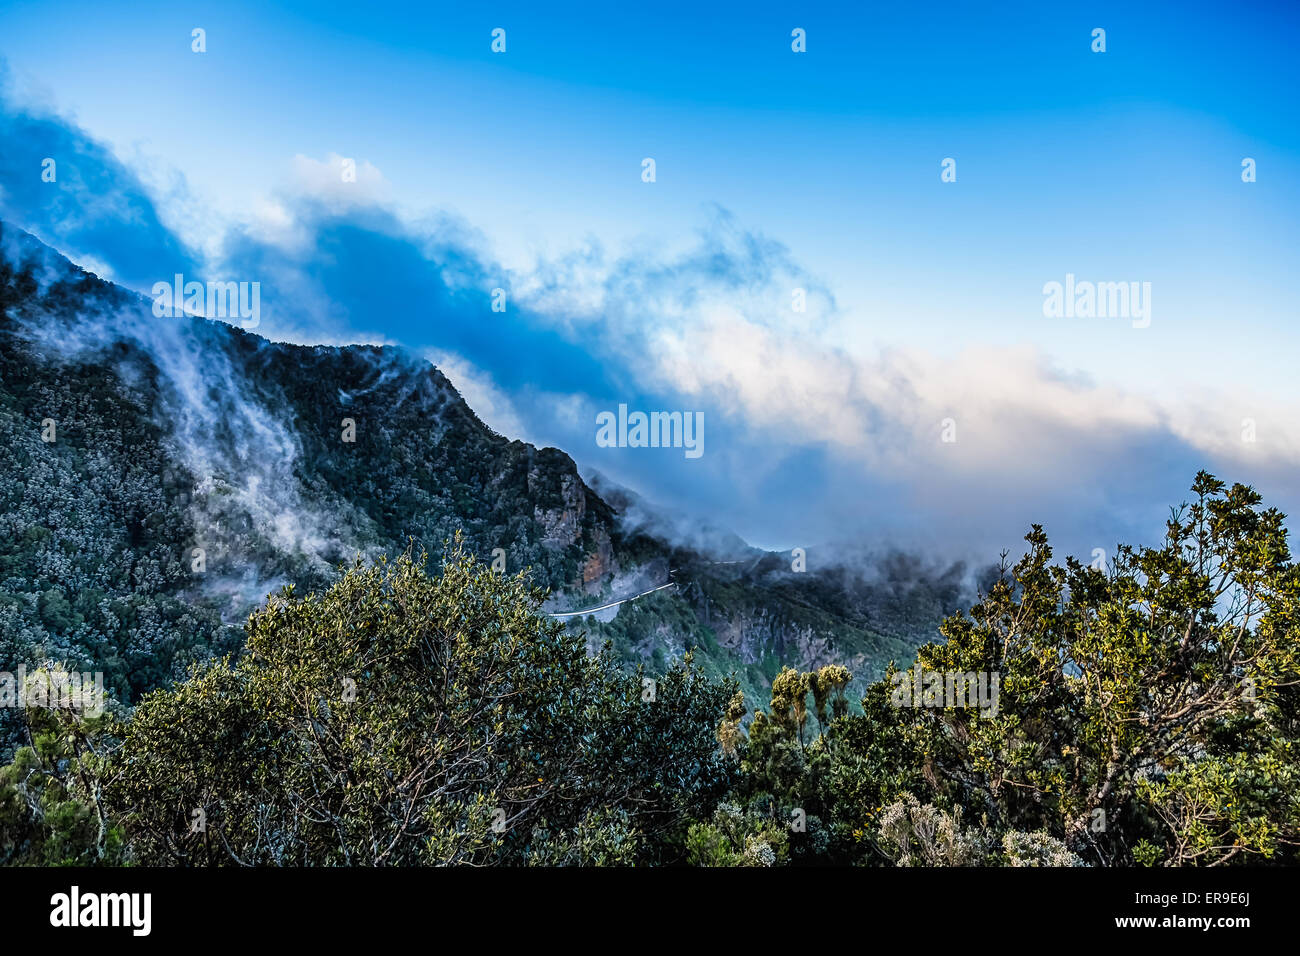 Montagnes avec nuages sur ciel bleu paysage dans l'île de Ténérife, Espagne Banque D'Images